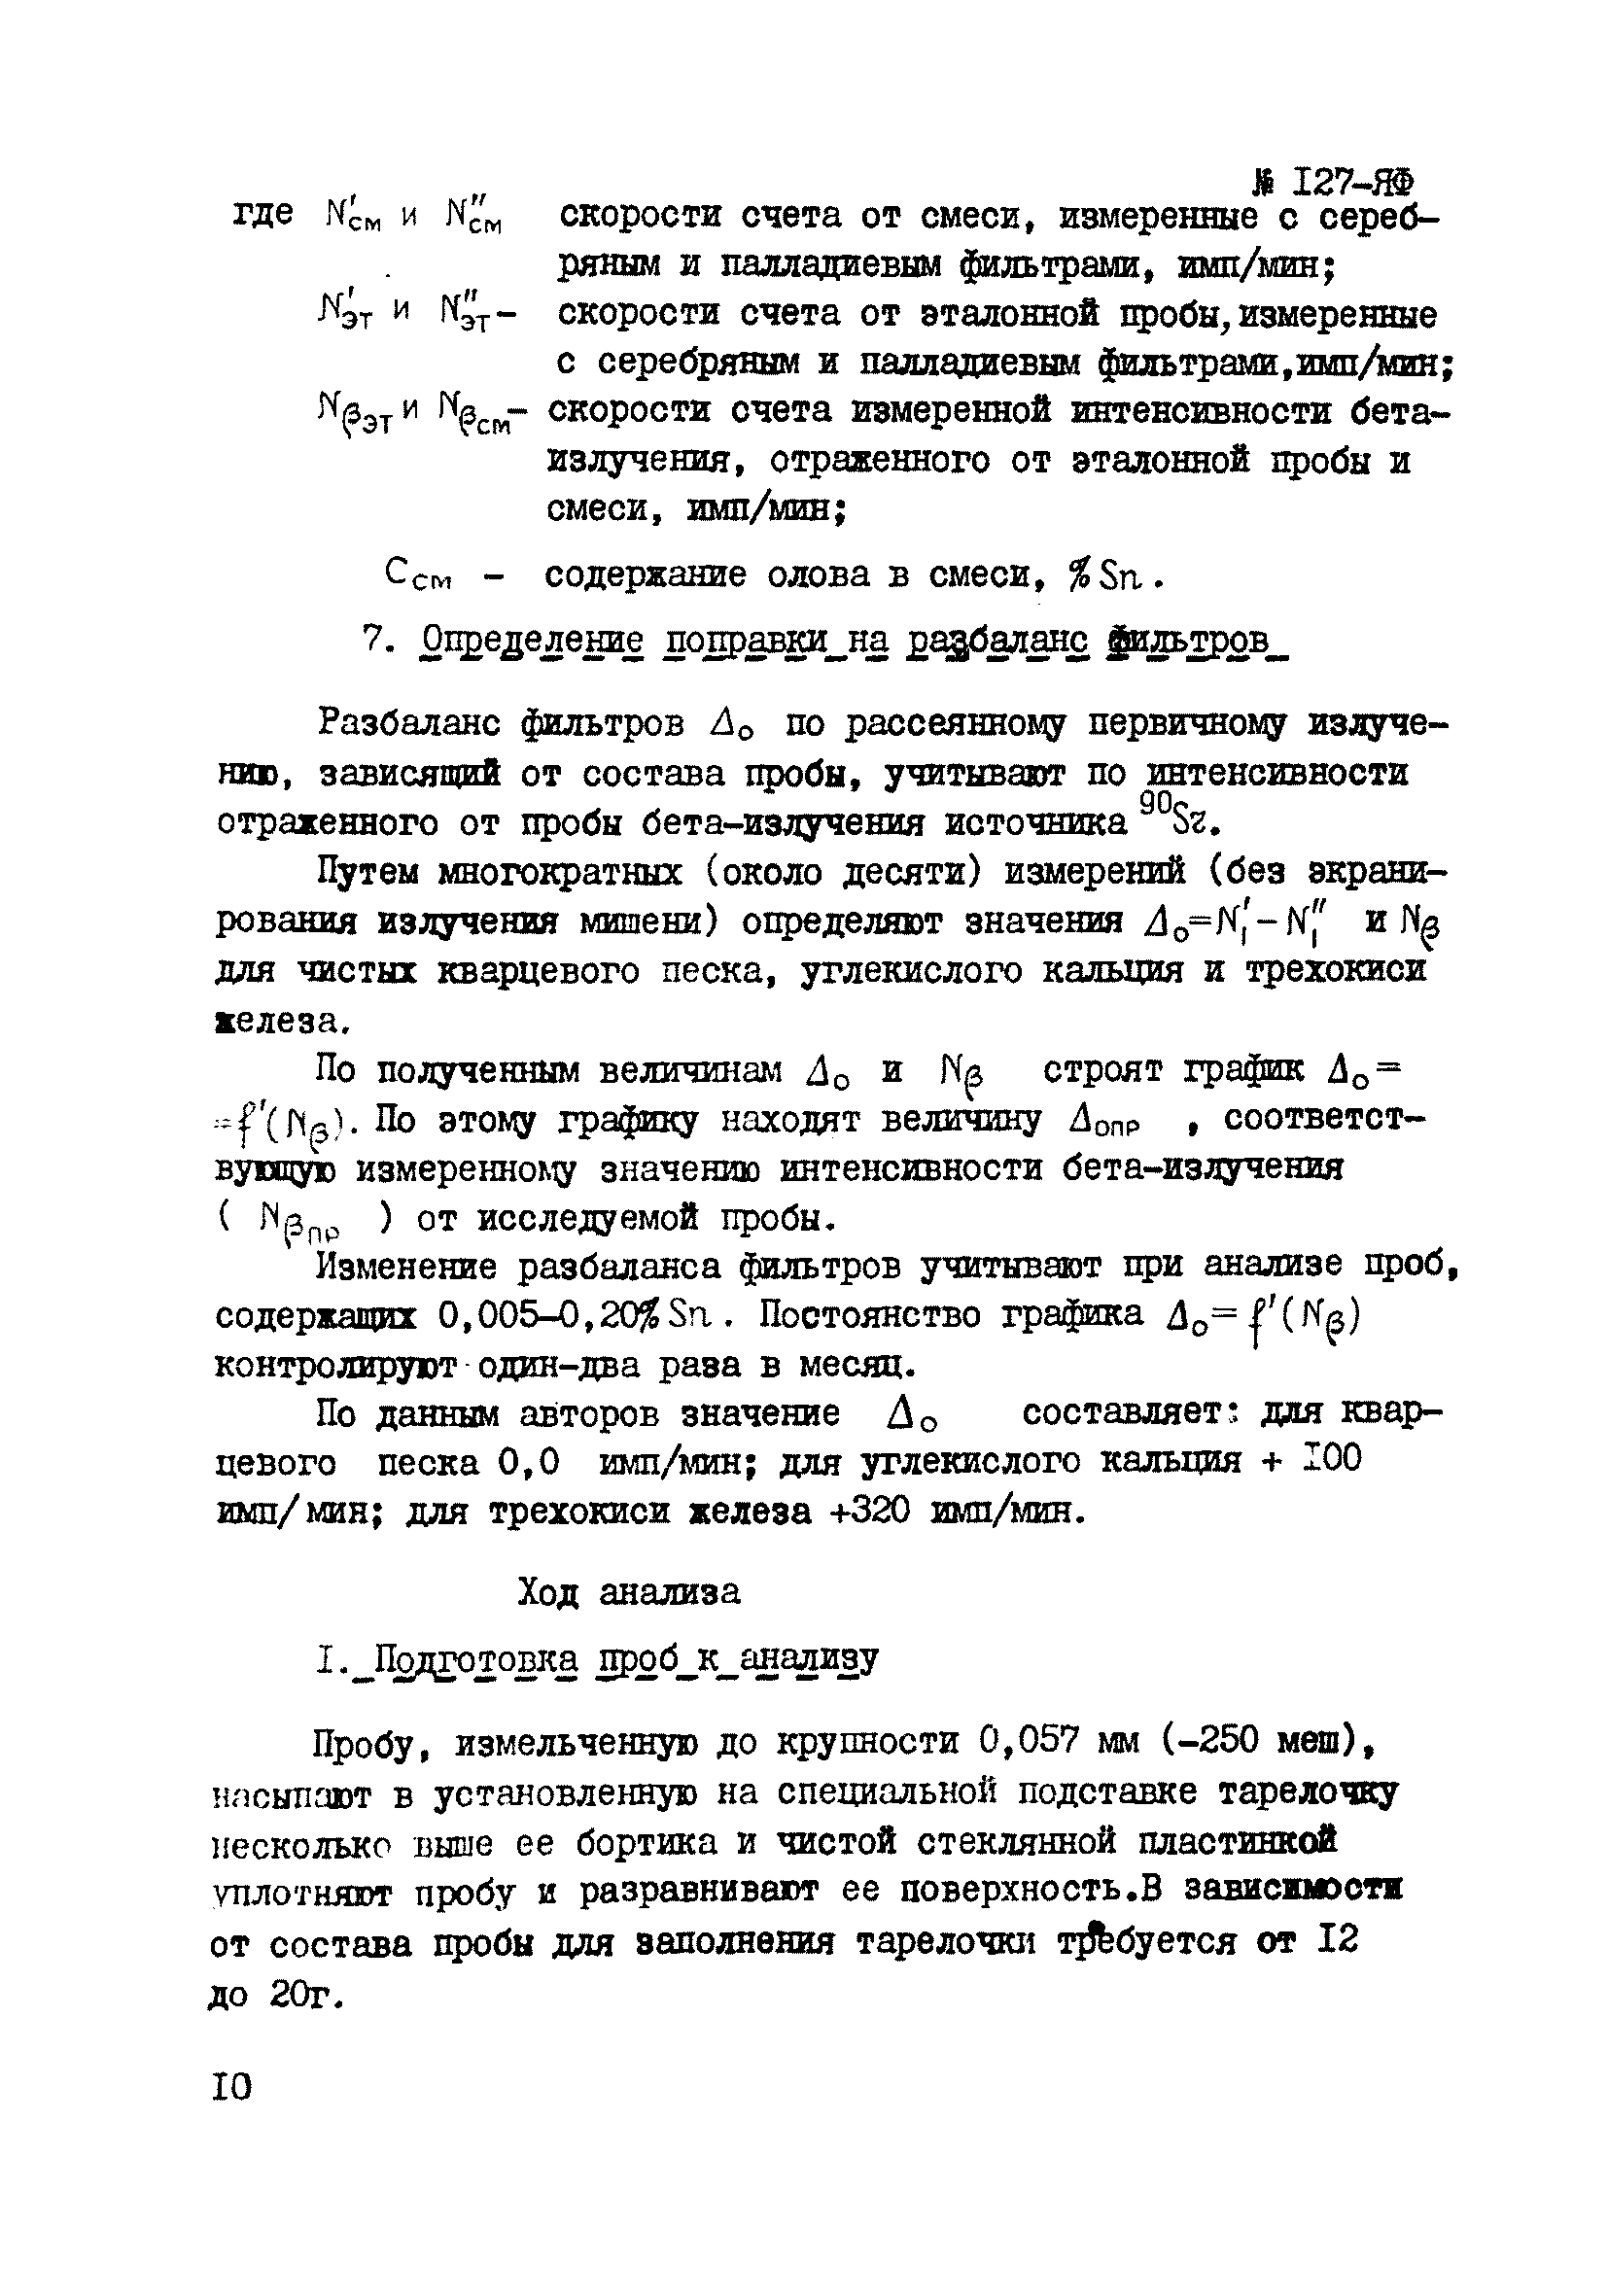 Инструкция НСАМ 127-ЯФ